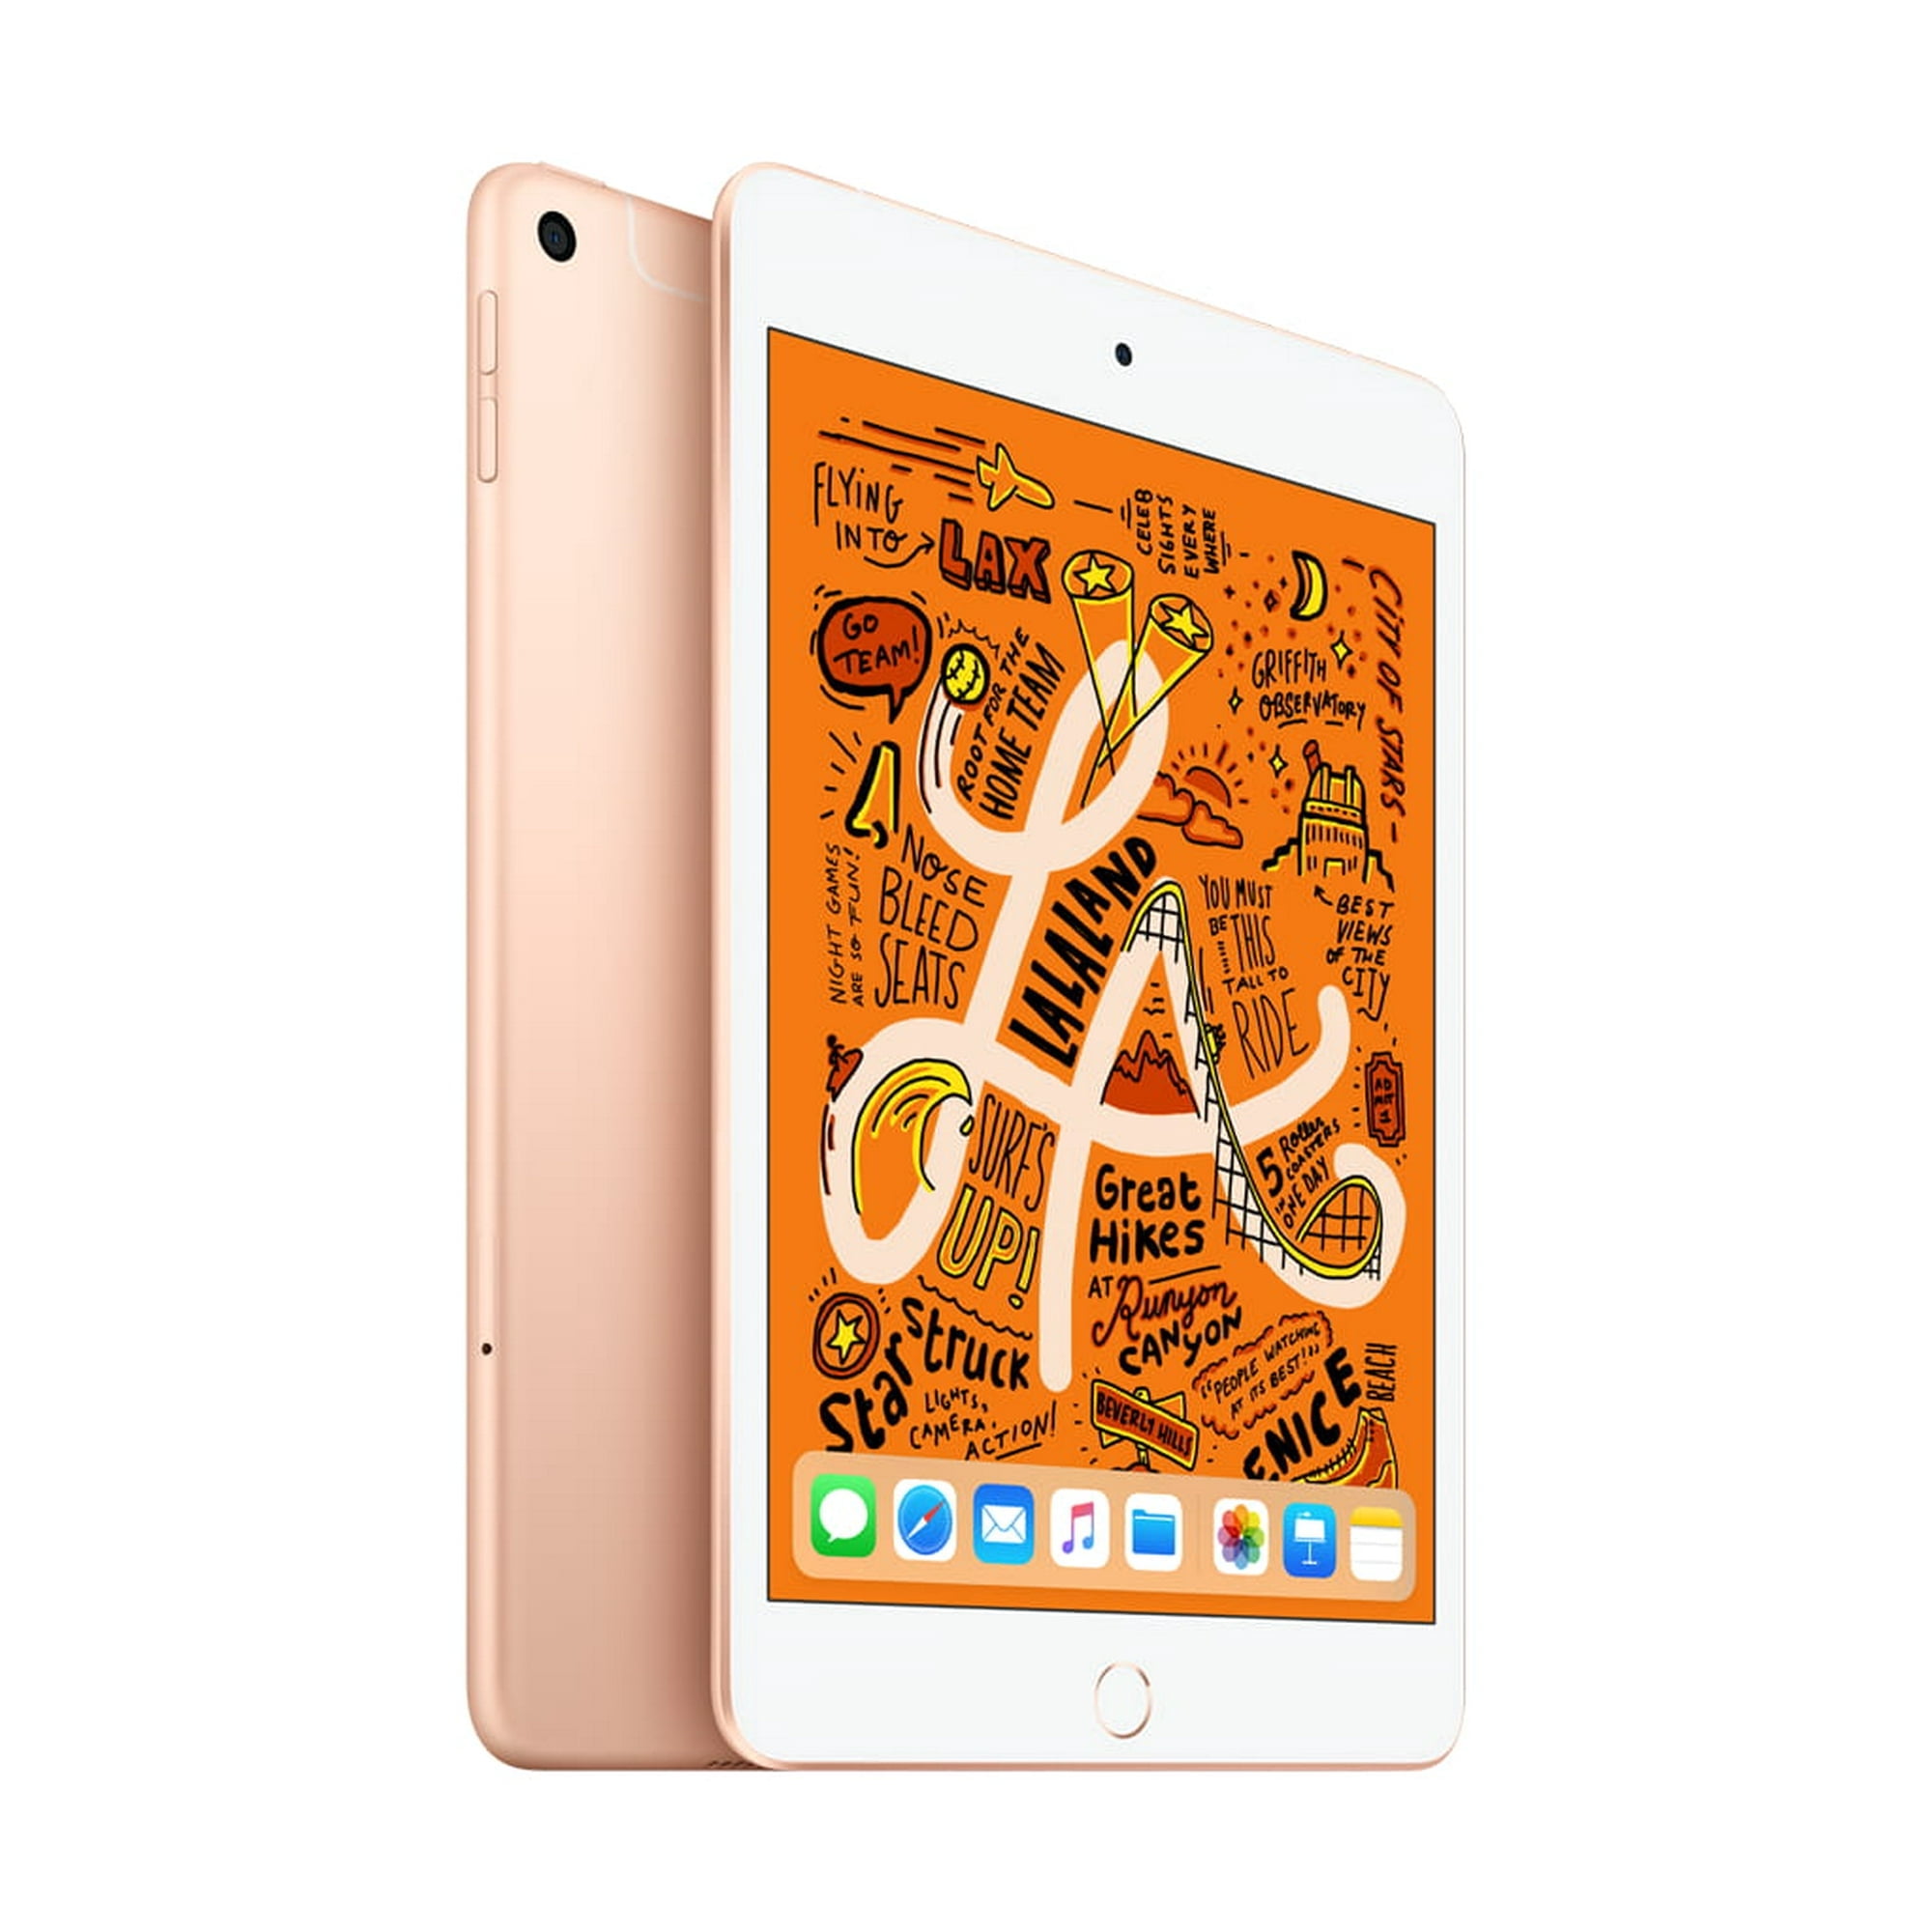 2019 Apple iPad Mini Wi-Fi 64GB - Gold (5th Generation) - Walmart